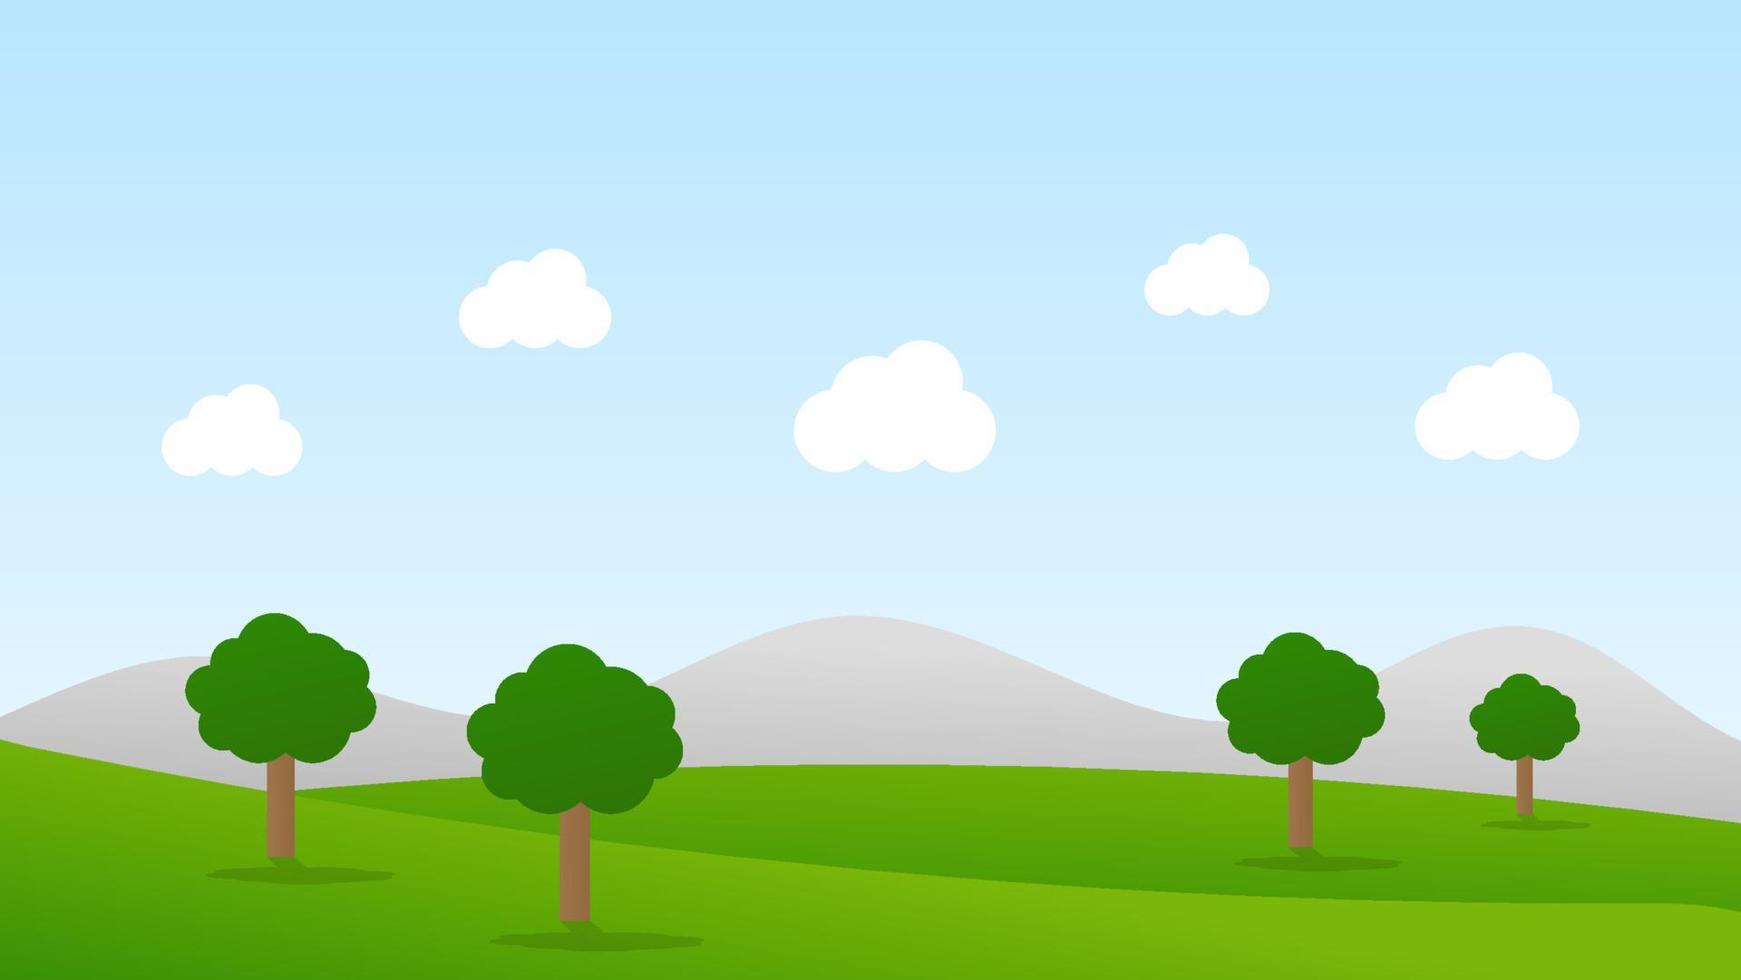 Landschaftskarikaturszene mit grünen Bäumen auf Hügeln und weißer flaumiger Wolke im Sommerhintergrund des blauen Himmels vektor